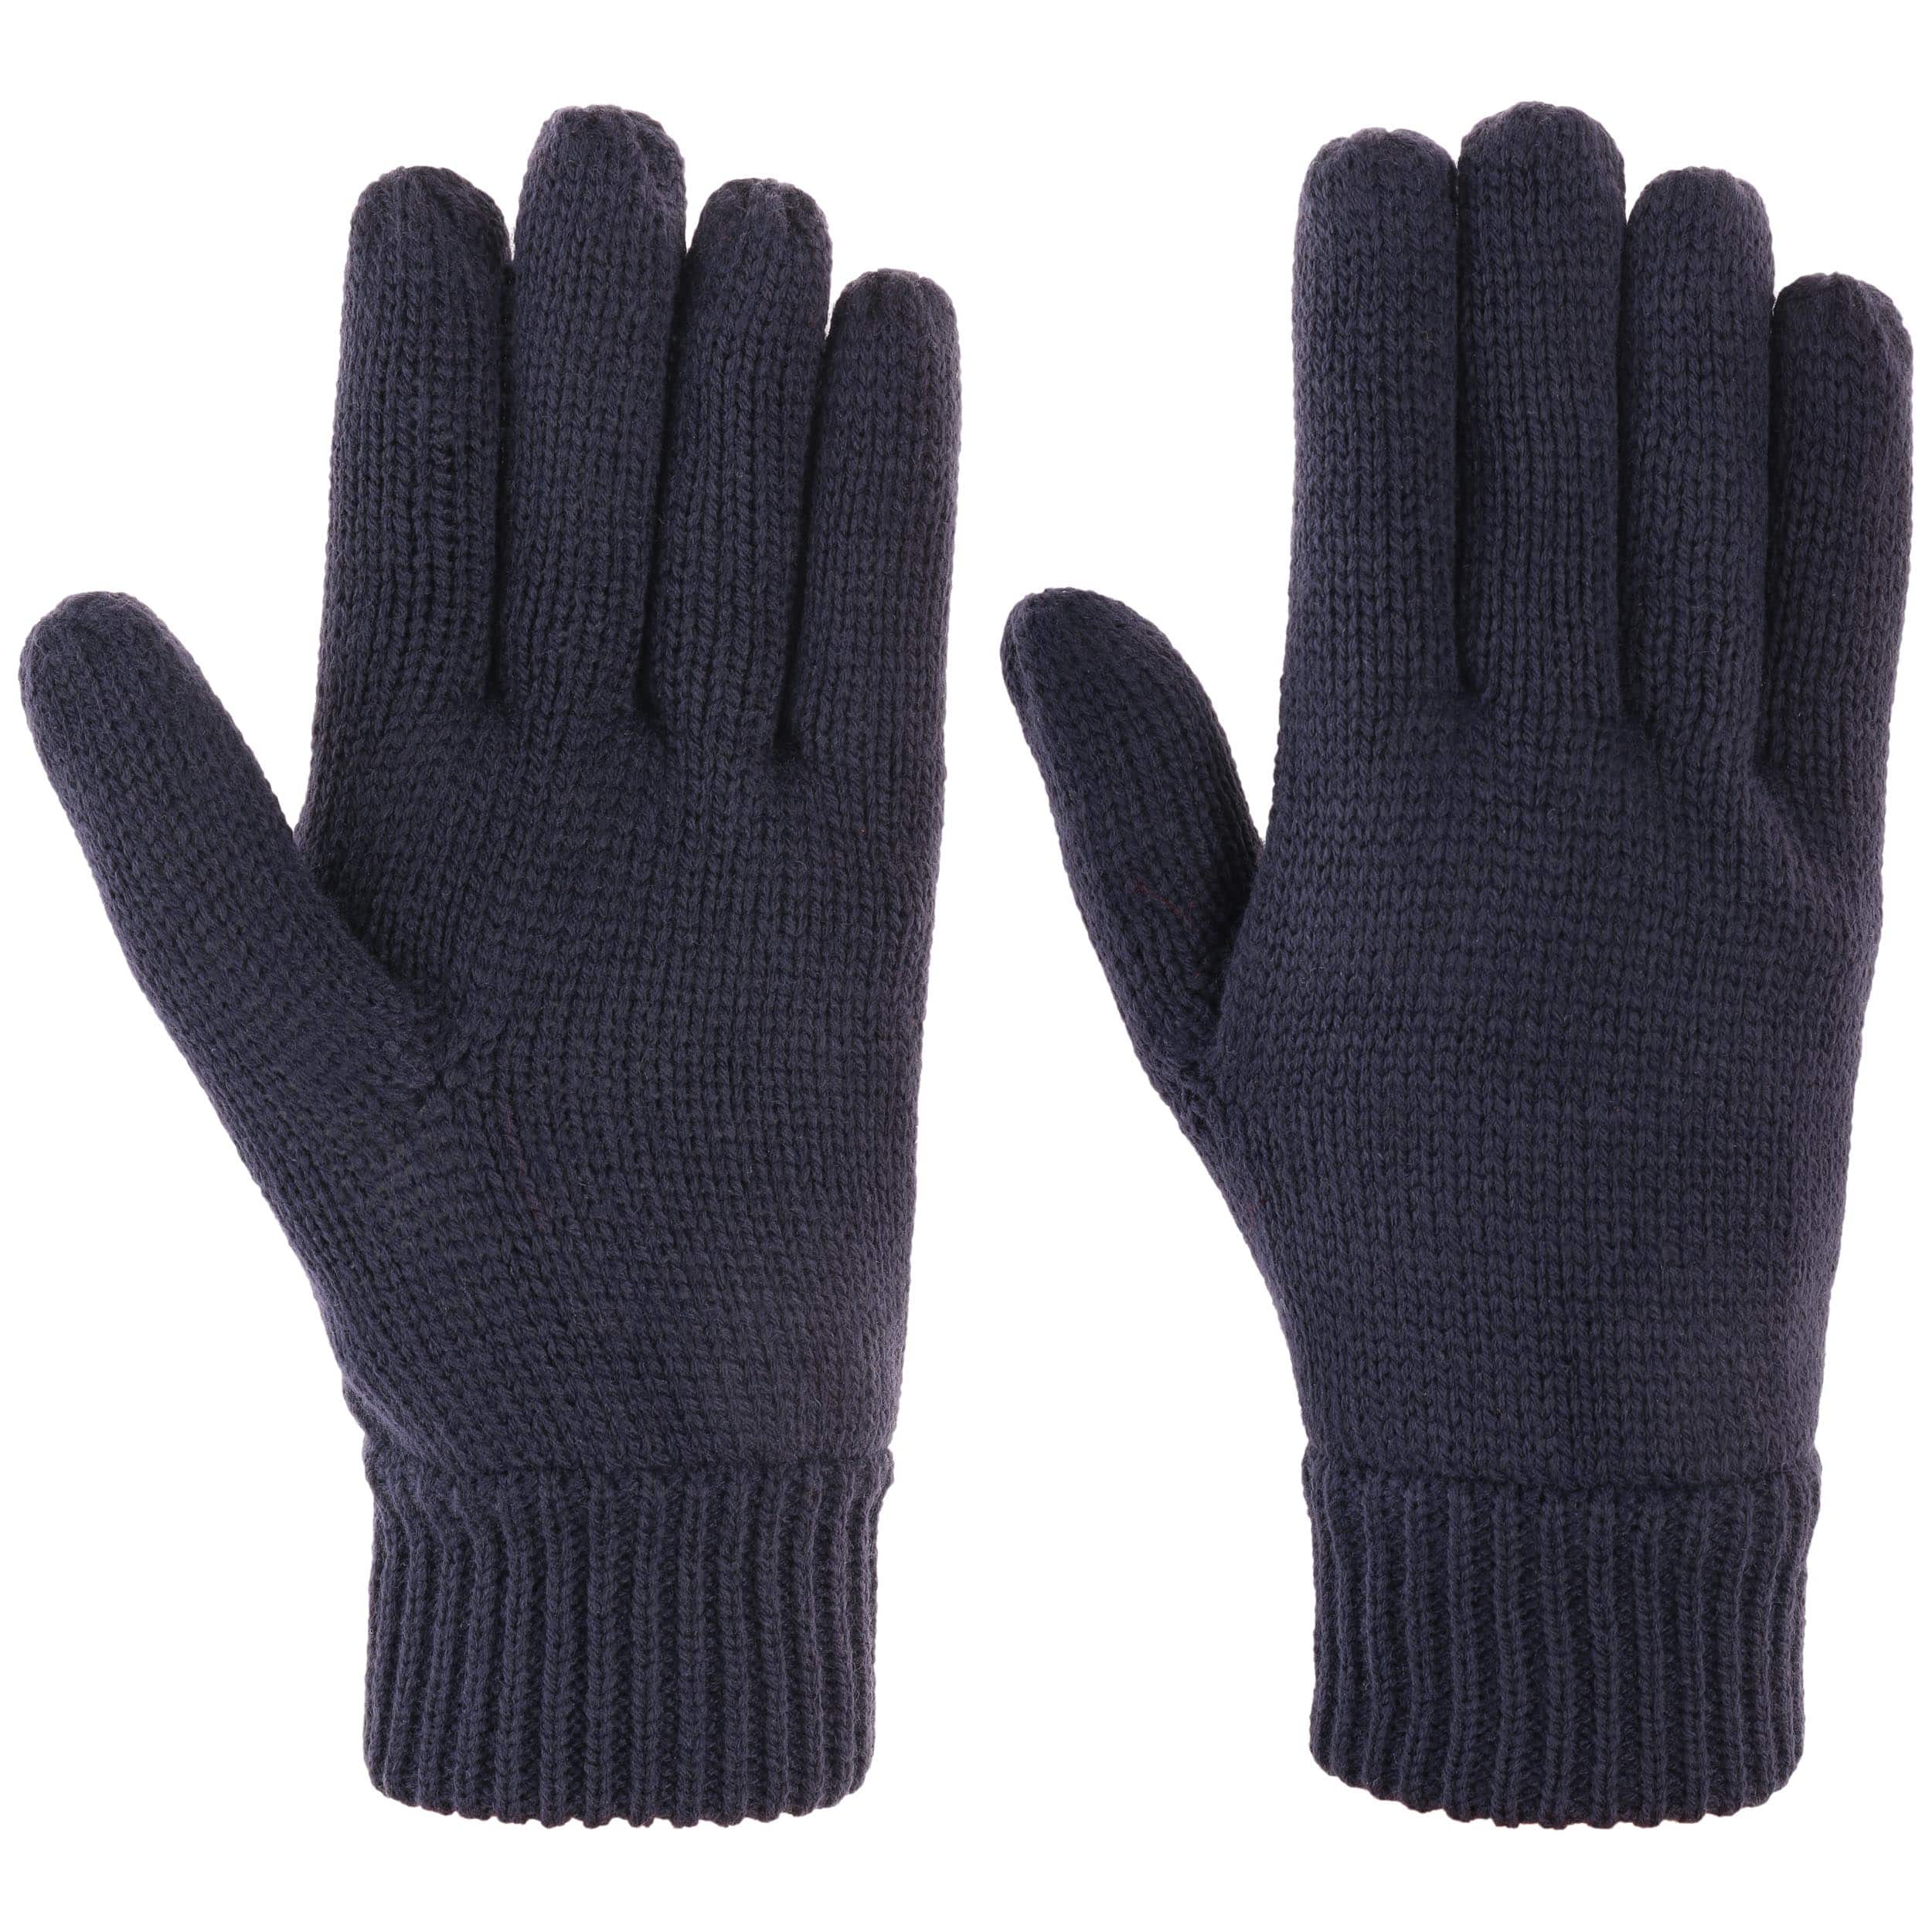 Gewoon doen hoe te gebruiken Makkelijk te gebeuren Thinsulate 3M Handschoenen by Lipodo - 15,95 €